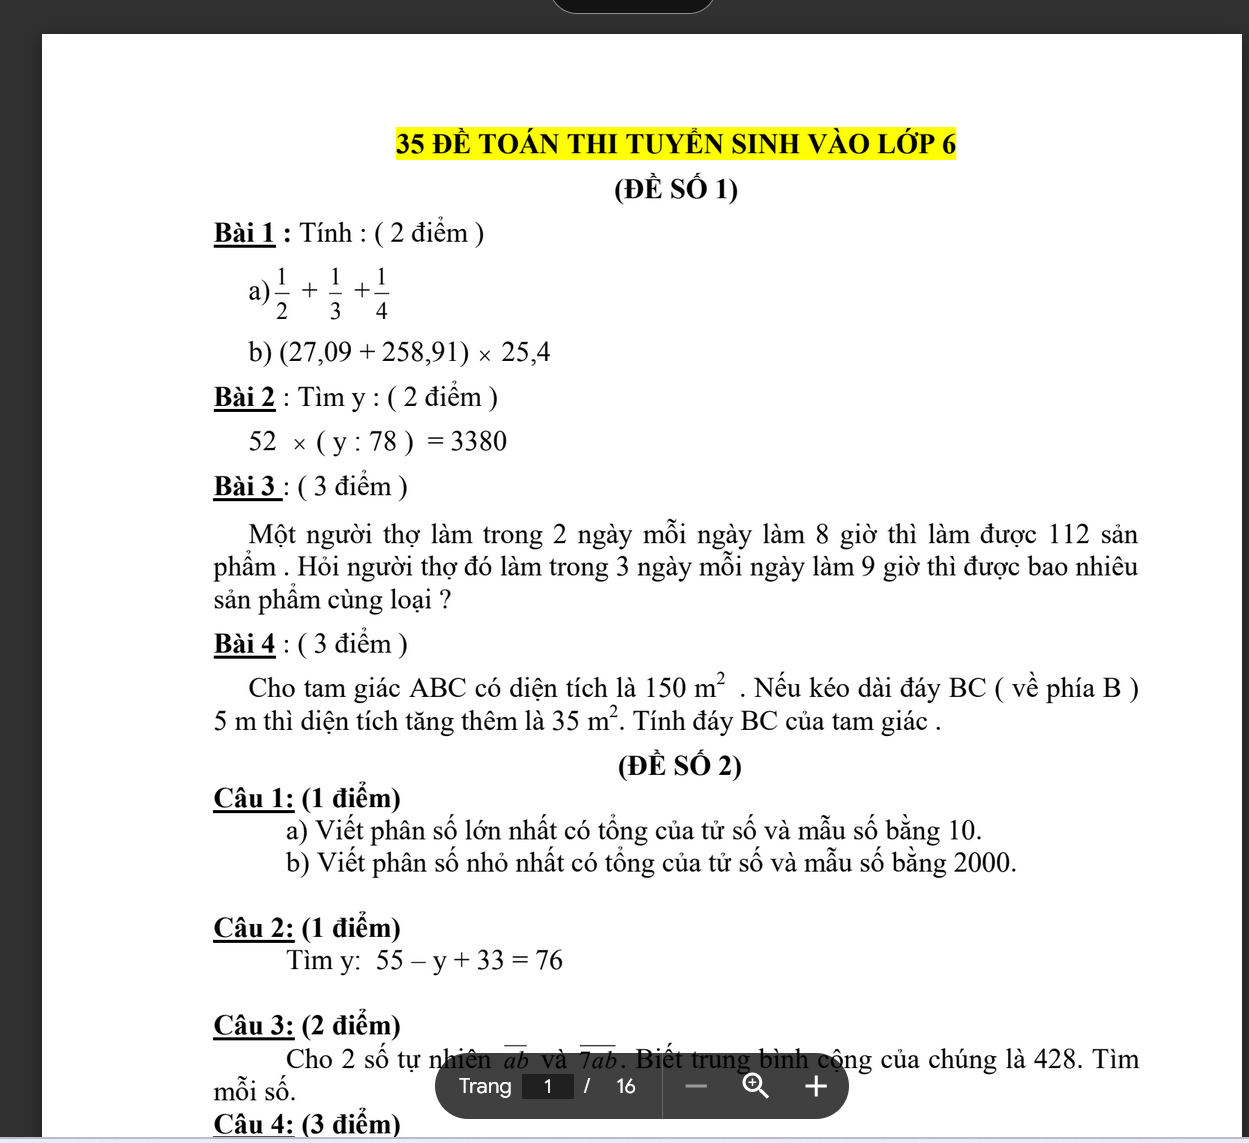 TÀI LIỆU 35 đề ôn luyện thi vào lớp 6 môn toán có đáp án LINK DRIVE